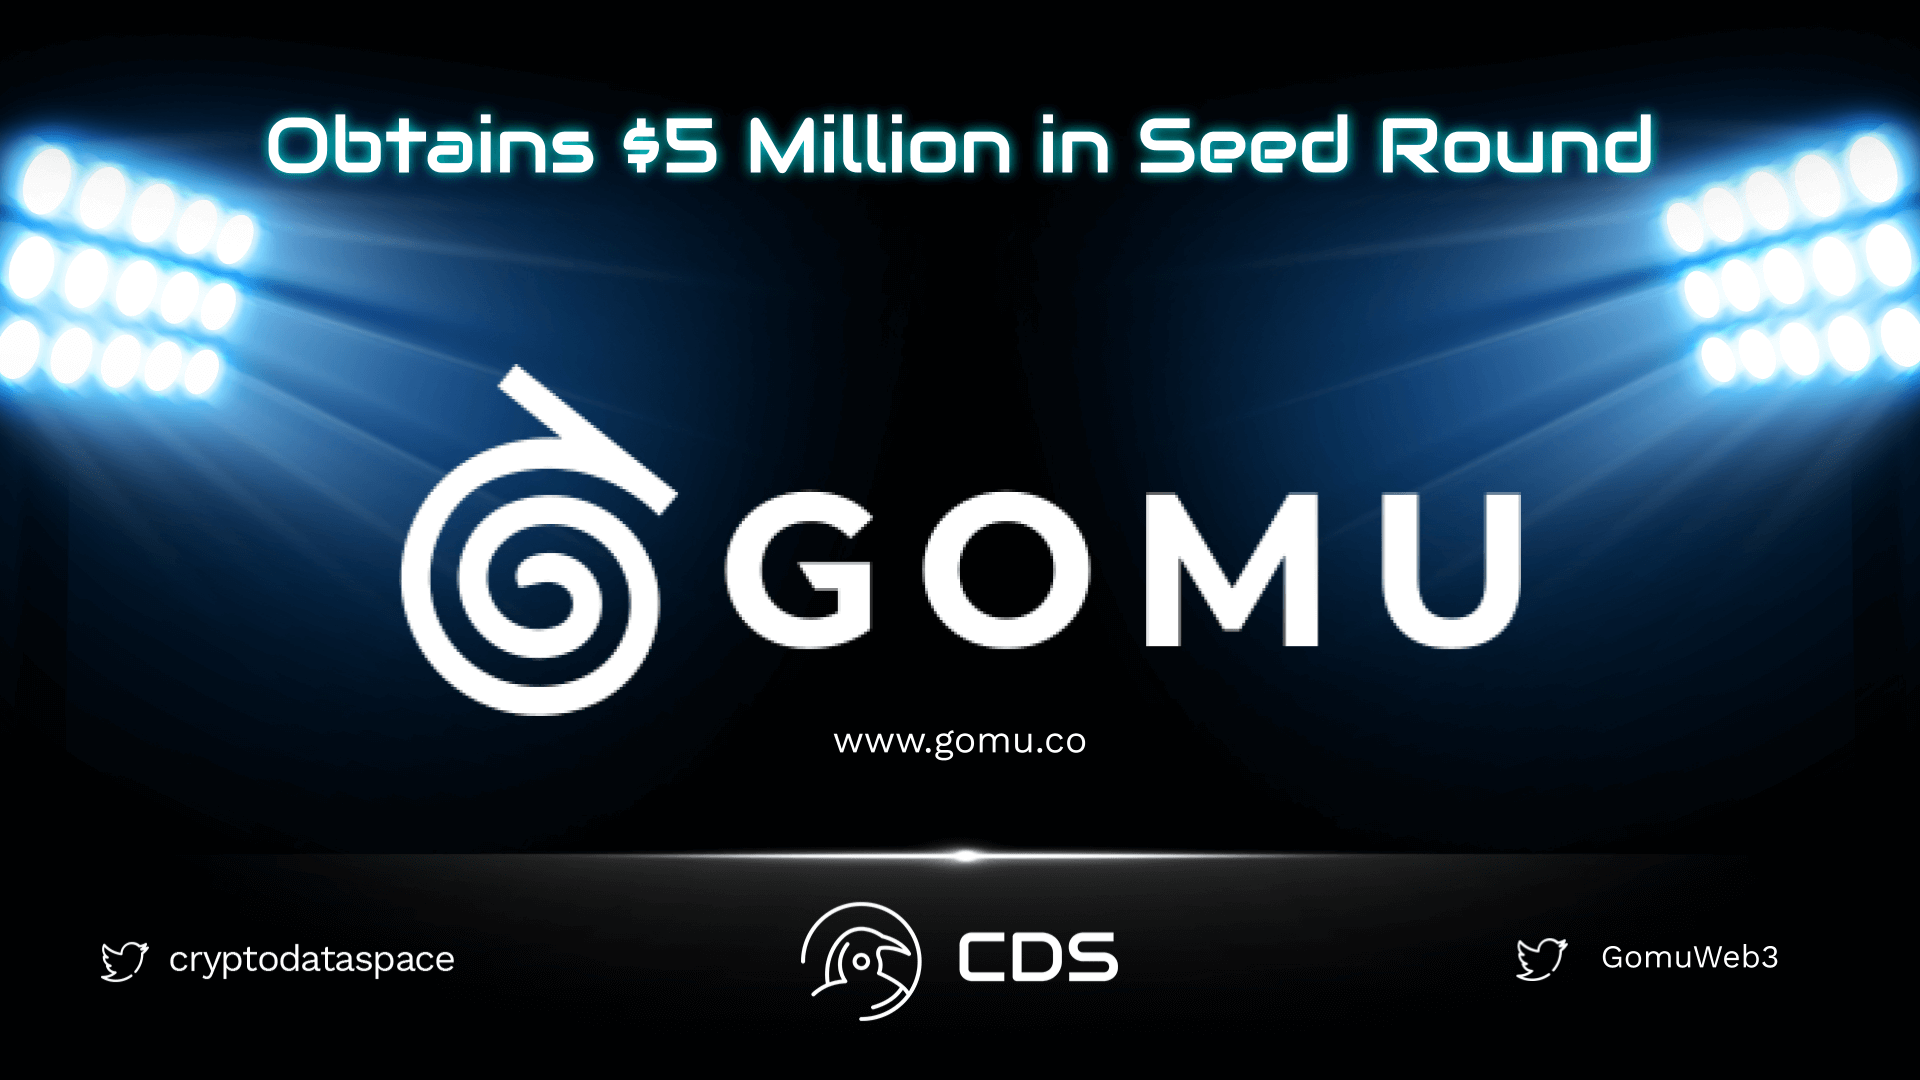 gomu obtains 5 million